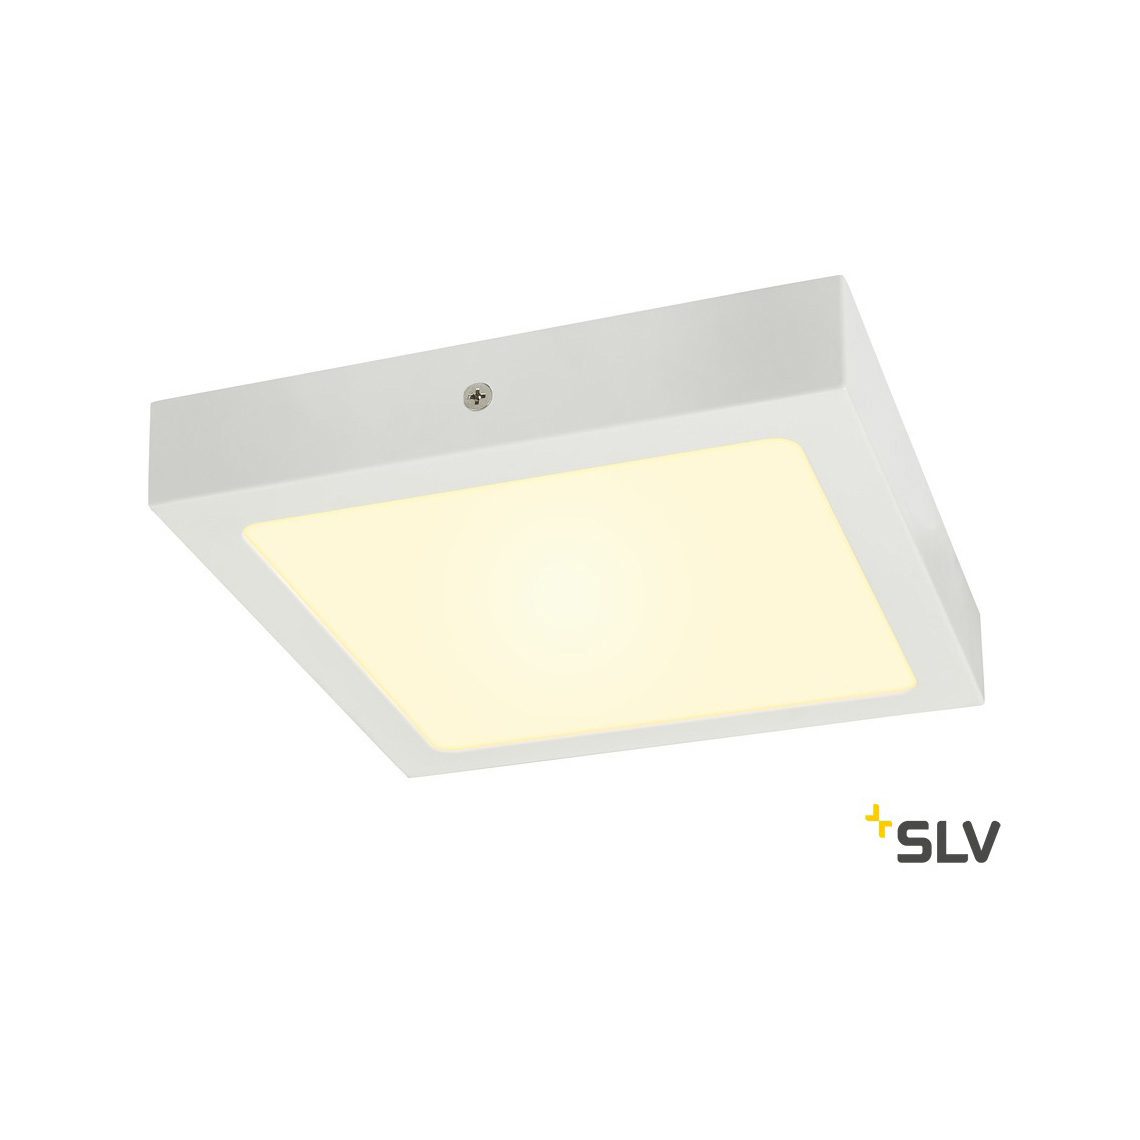 SLV SENSER 24 CW 3000K LED Ceiling Light square white 1200lm 3000K